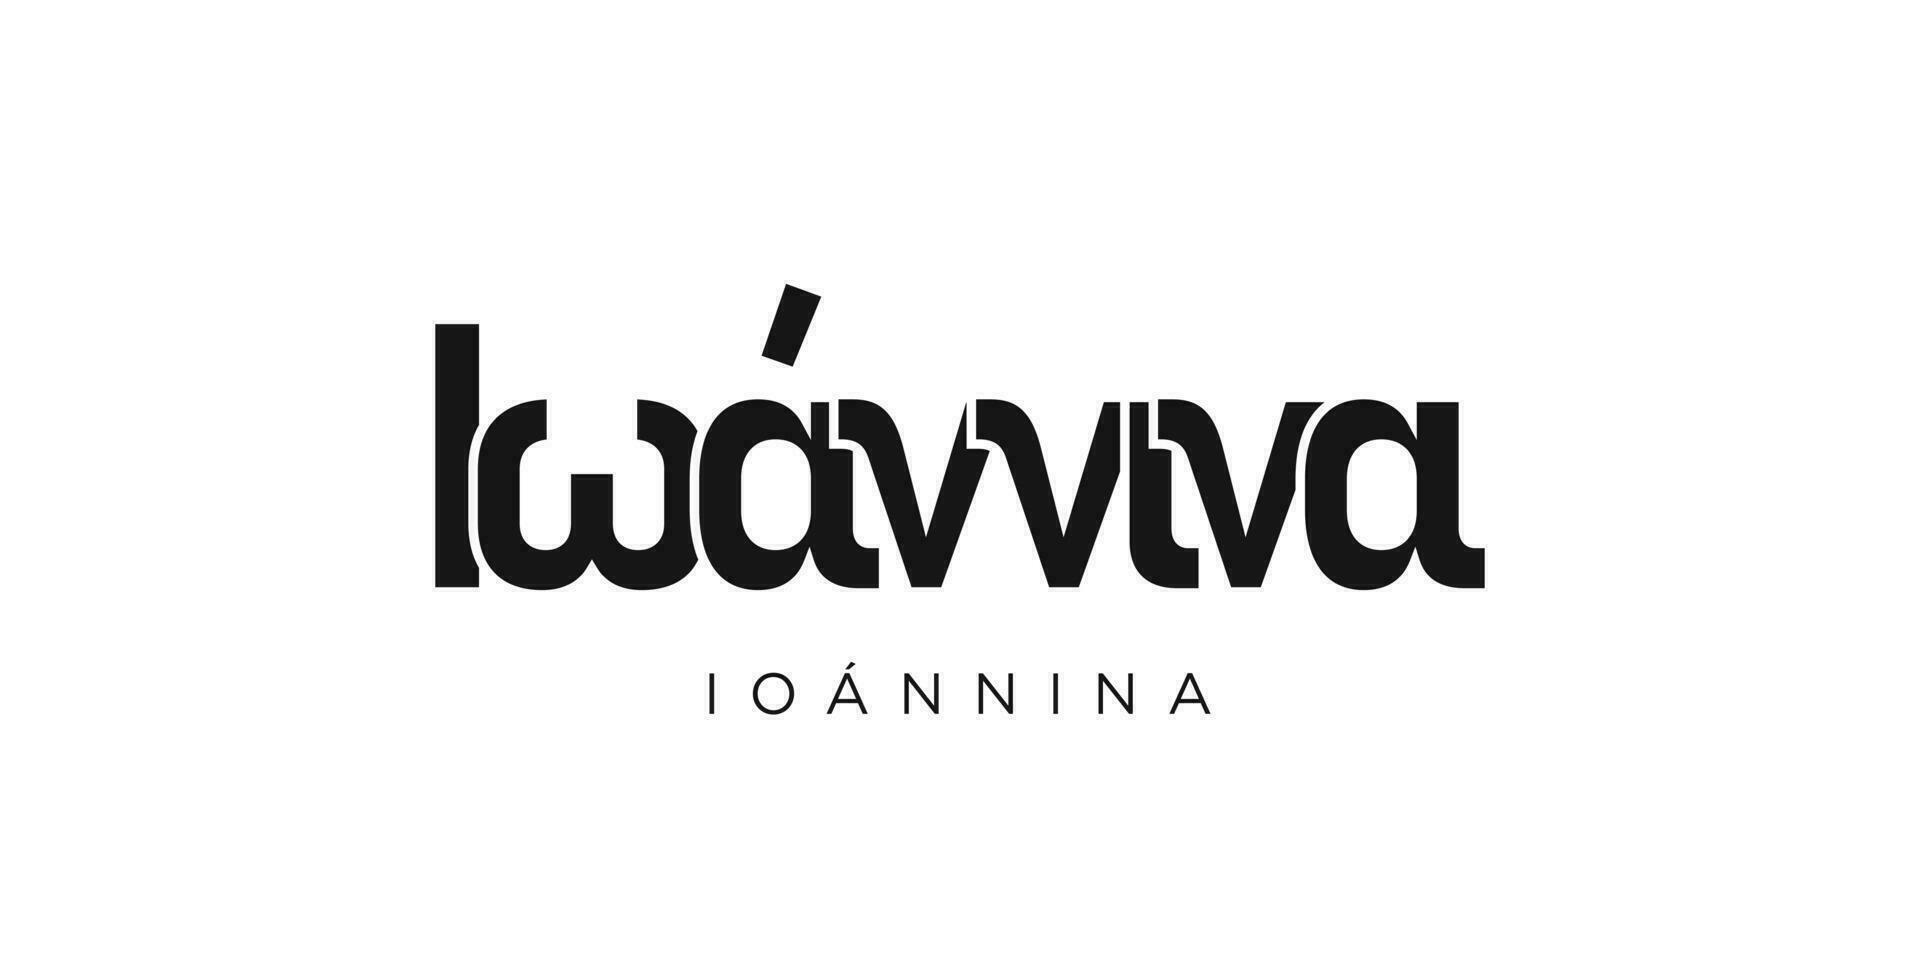 ioannina in de Griekenland embleem. de ontwerp Kenmerken een meetkundig stijl, vector illustratie met stoutmoedig typografie in een modern lettertype. de grafisch leuze belettering.